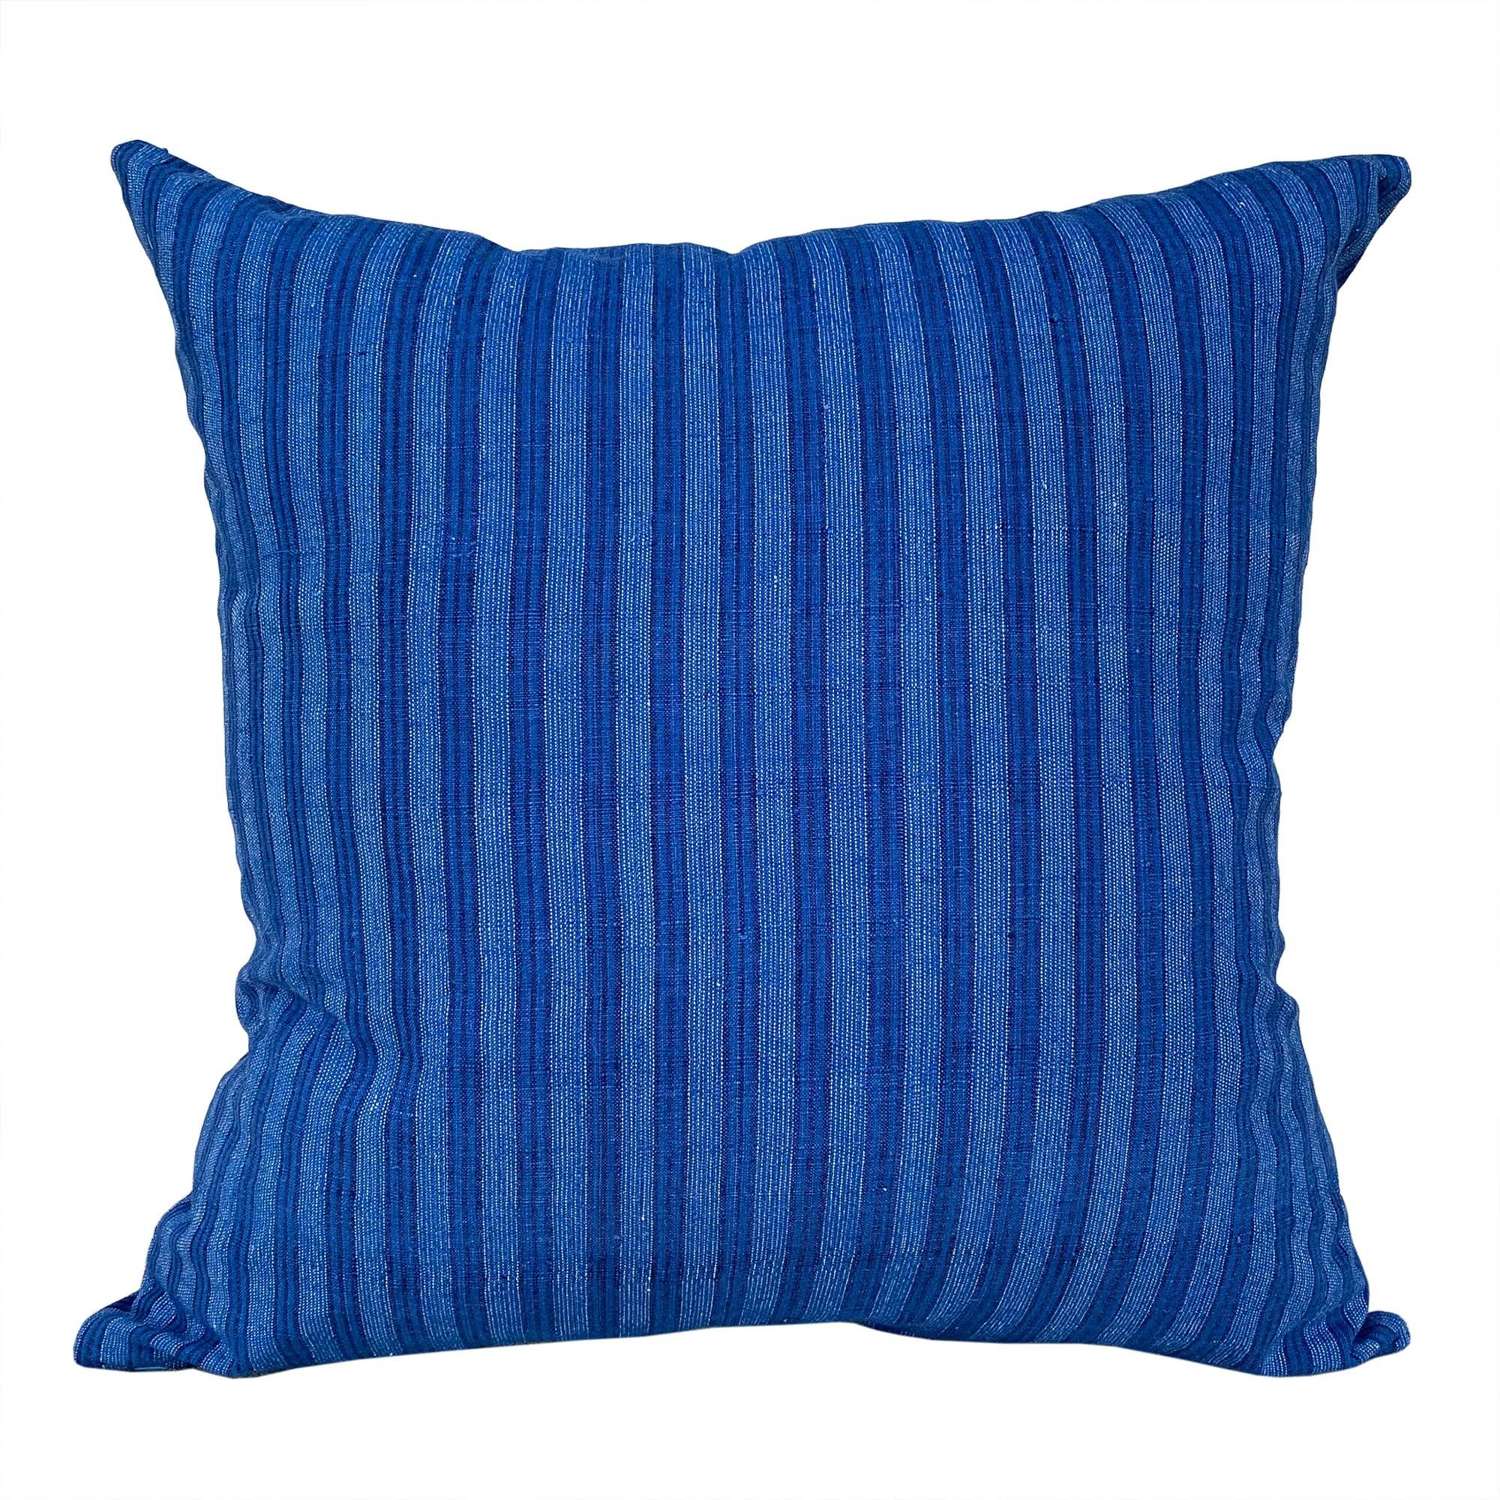 Songjiang indigo cushions